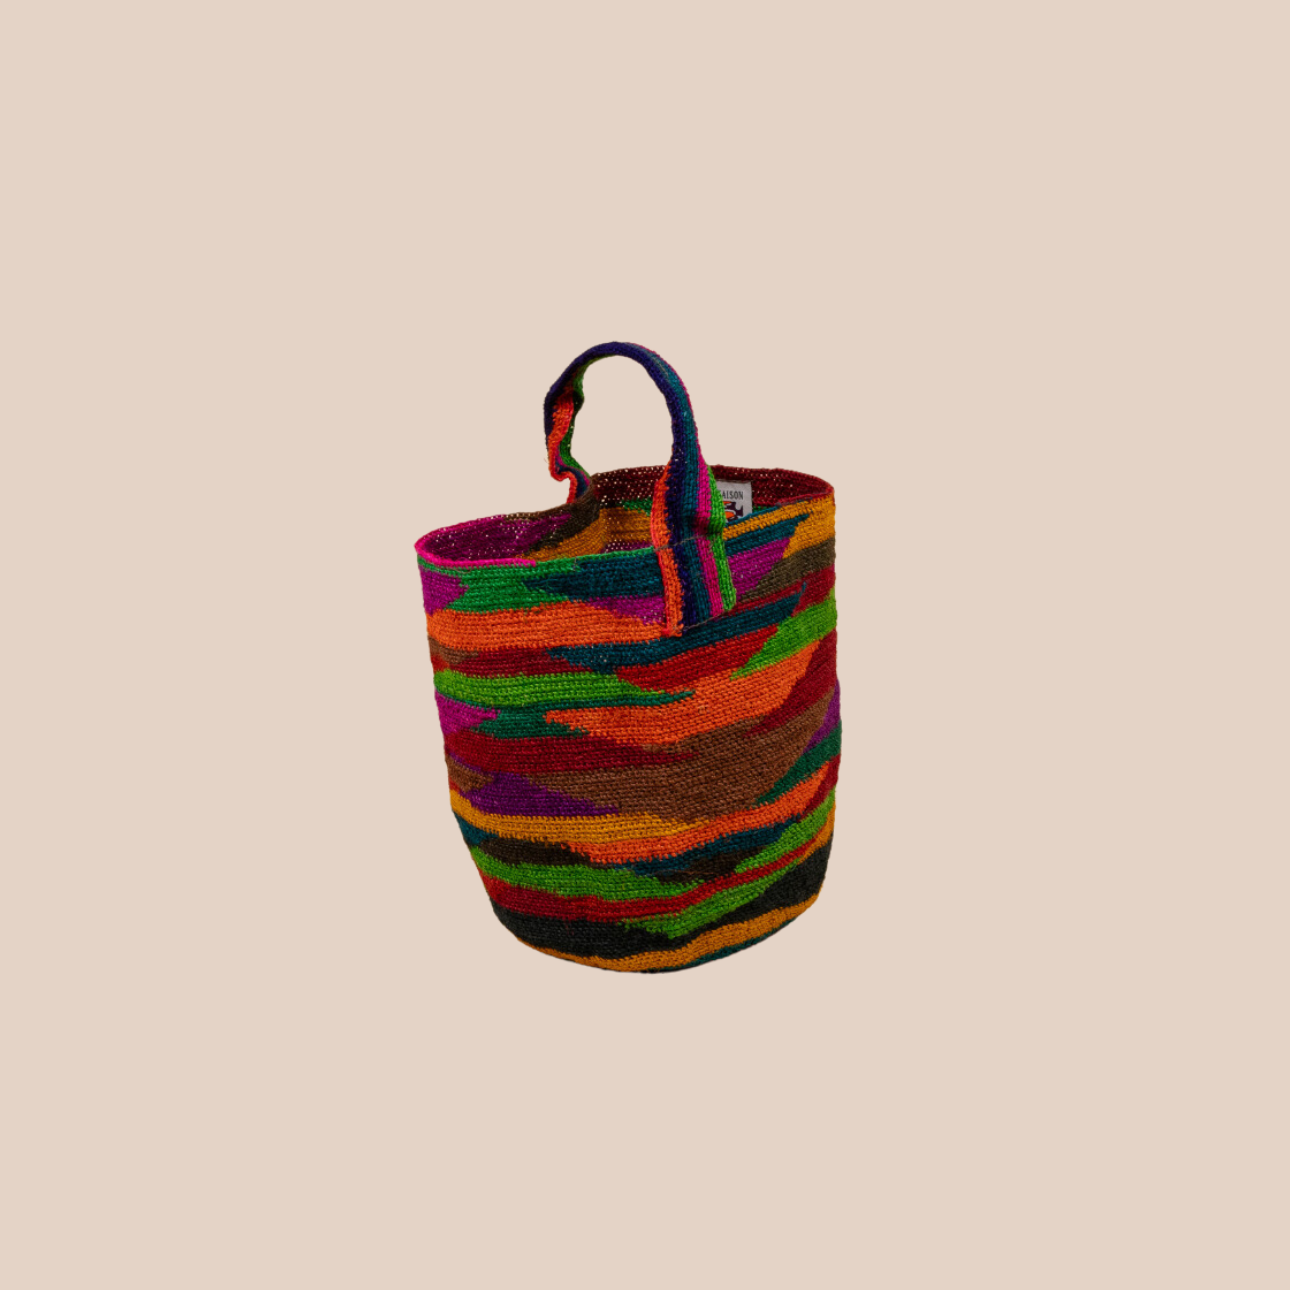 Image d'un sac Bahia en fibres de cactus, arborant des couleurs vives et audacieuses